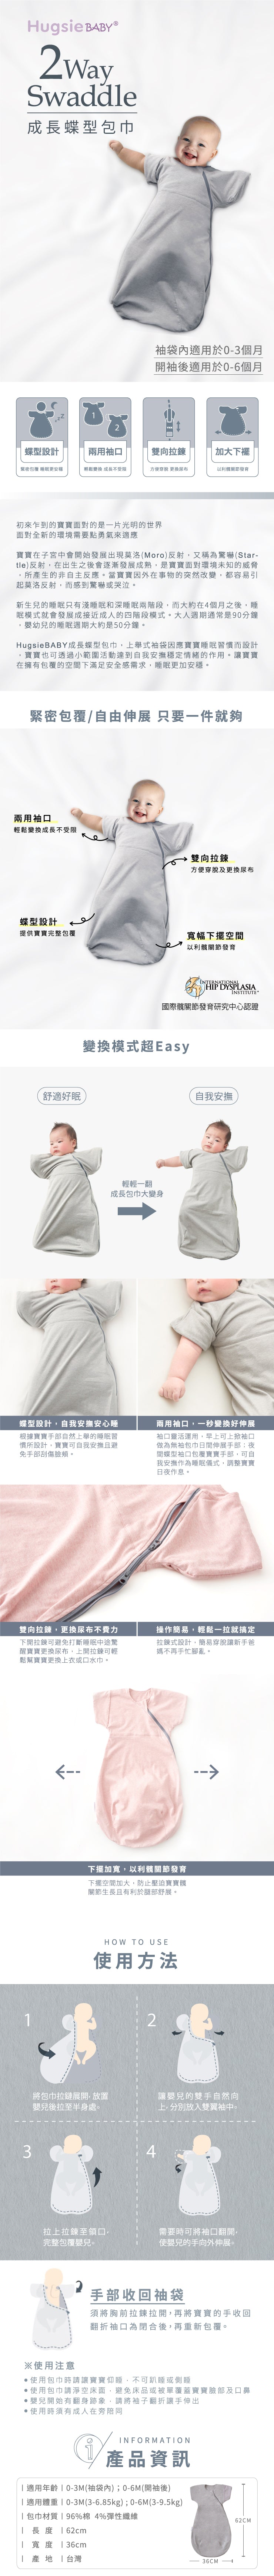 HugsieBABY成長蝶型包巾(適用於0-6個月),嬰兒包巾,嬰兒包被